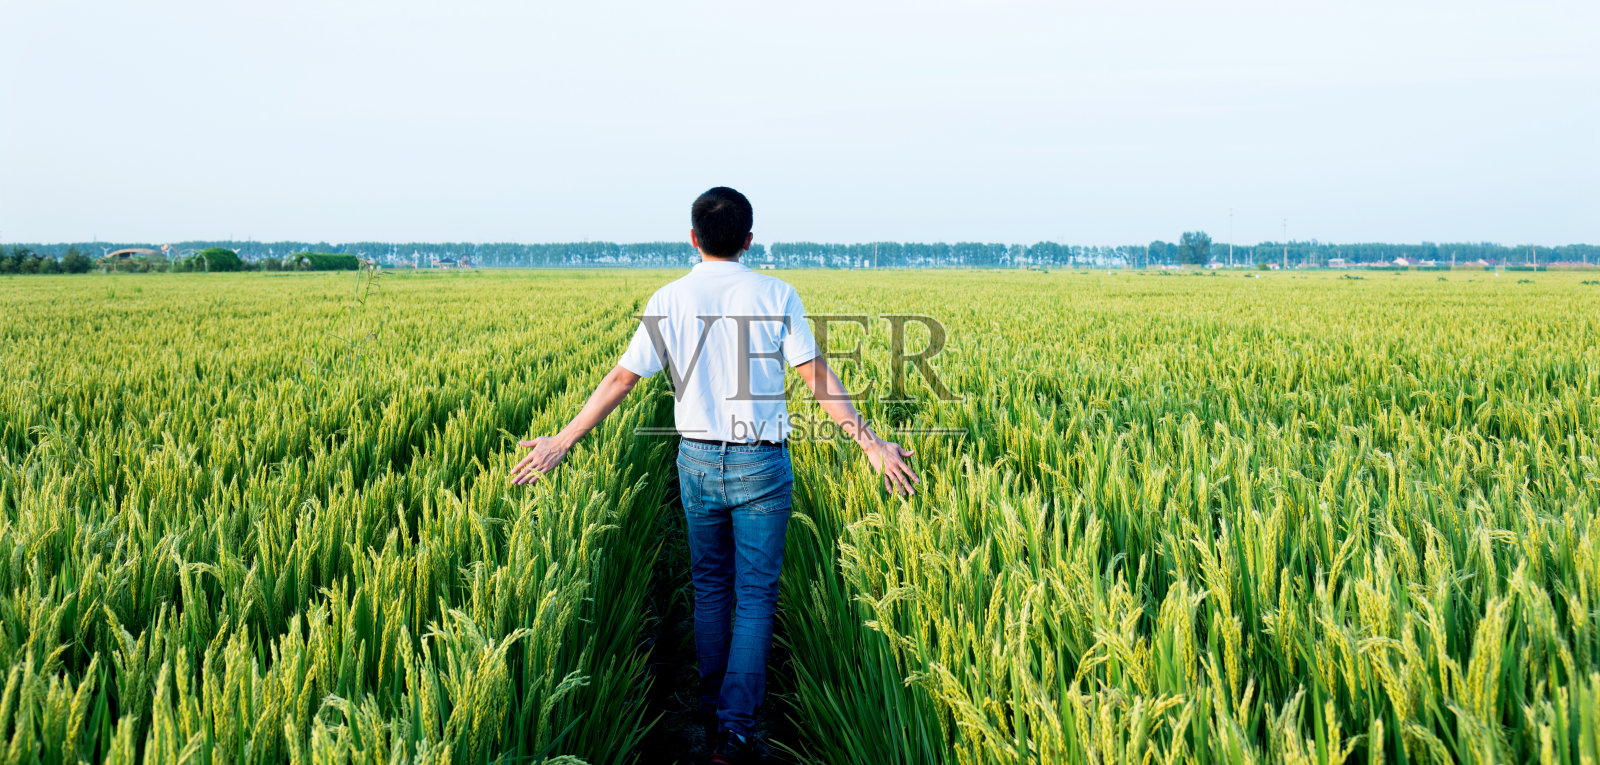 一个人走在稻田里照片摄影图片